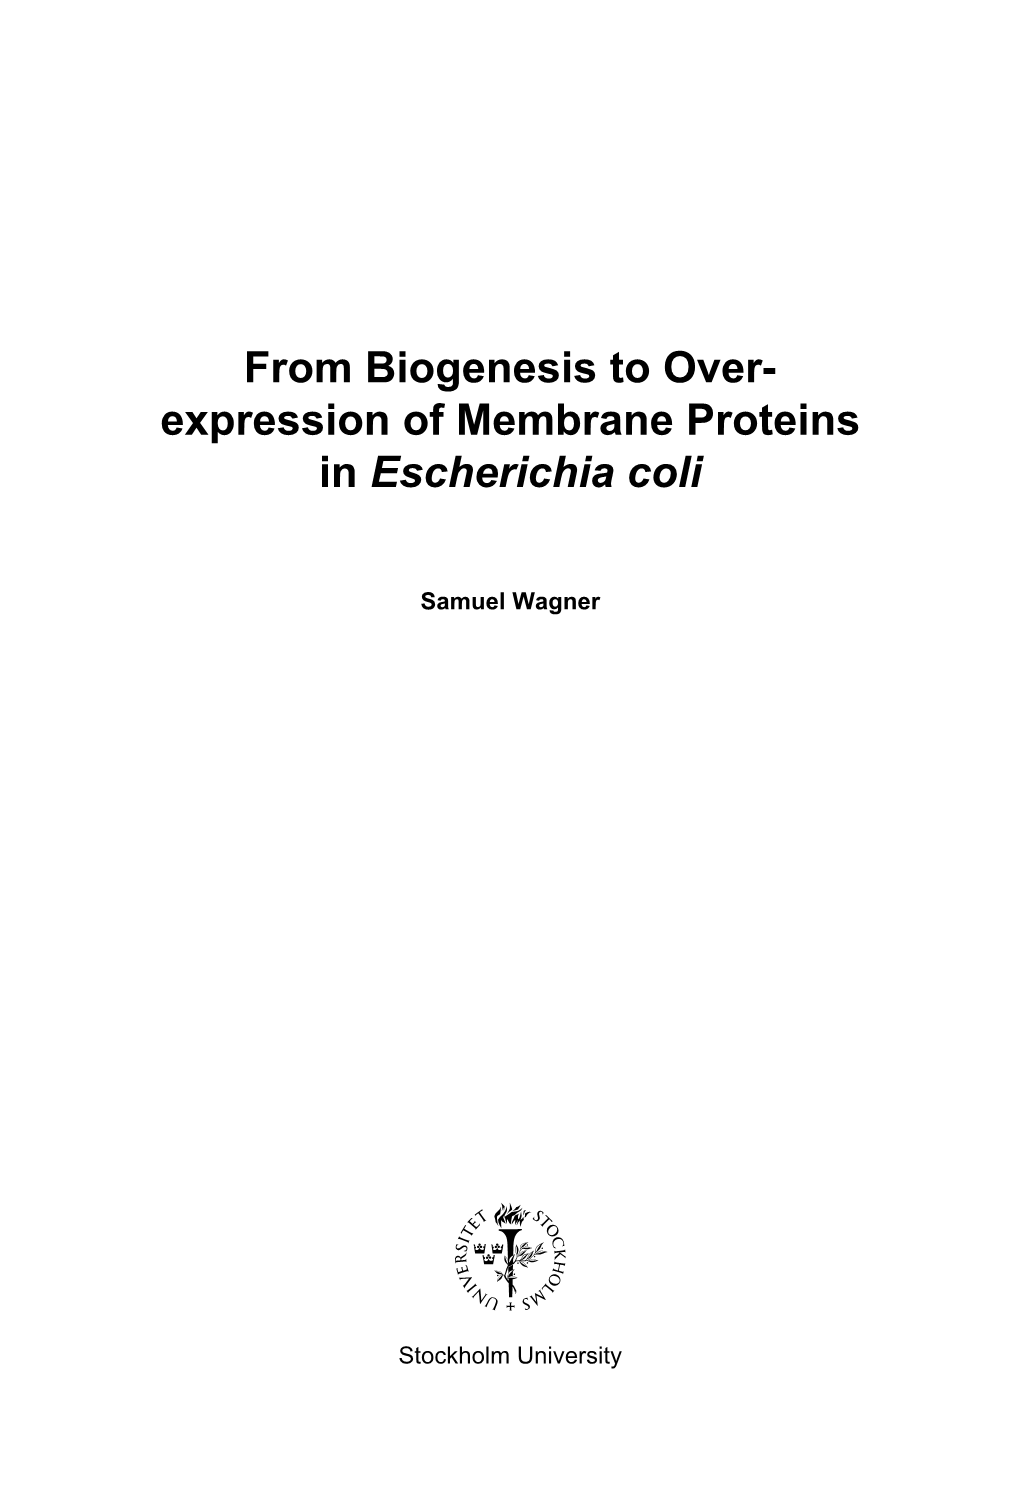 Expression of Membrane Proteins in Escherichia Coli